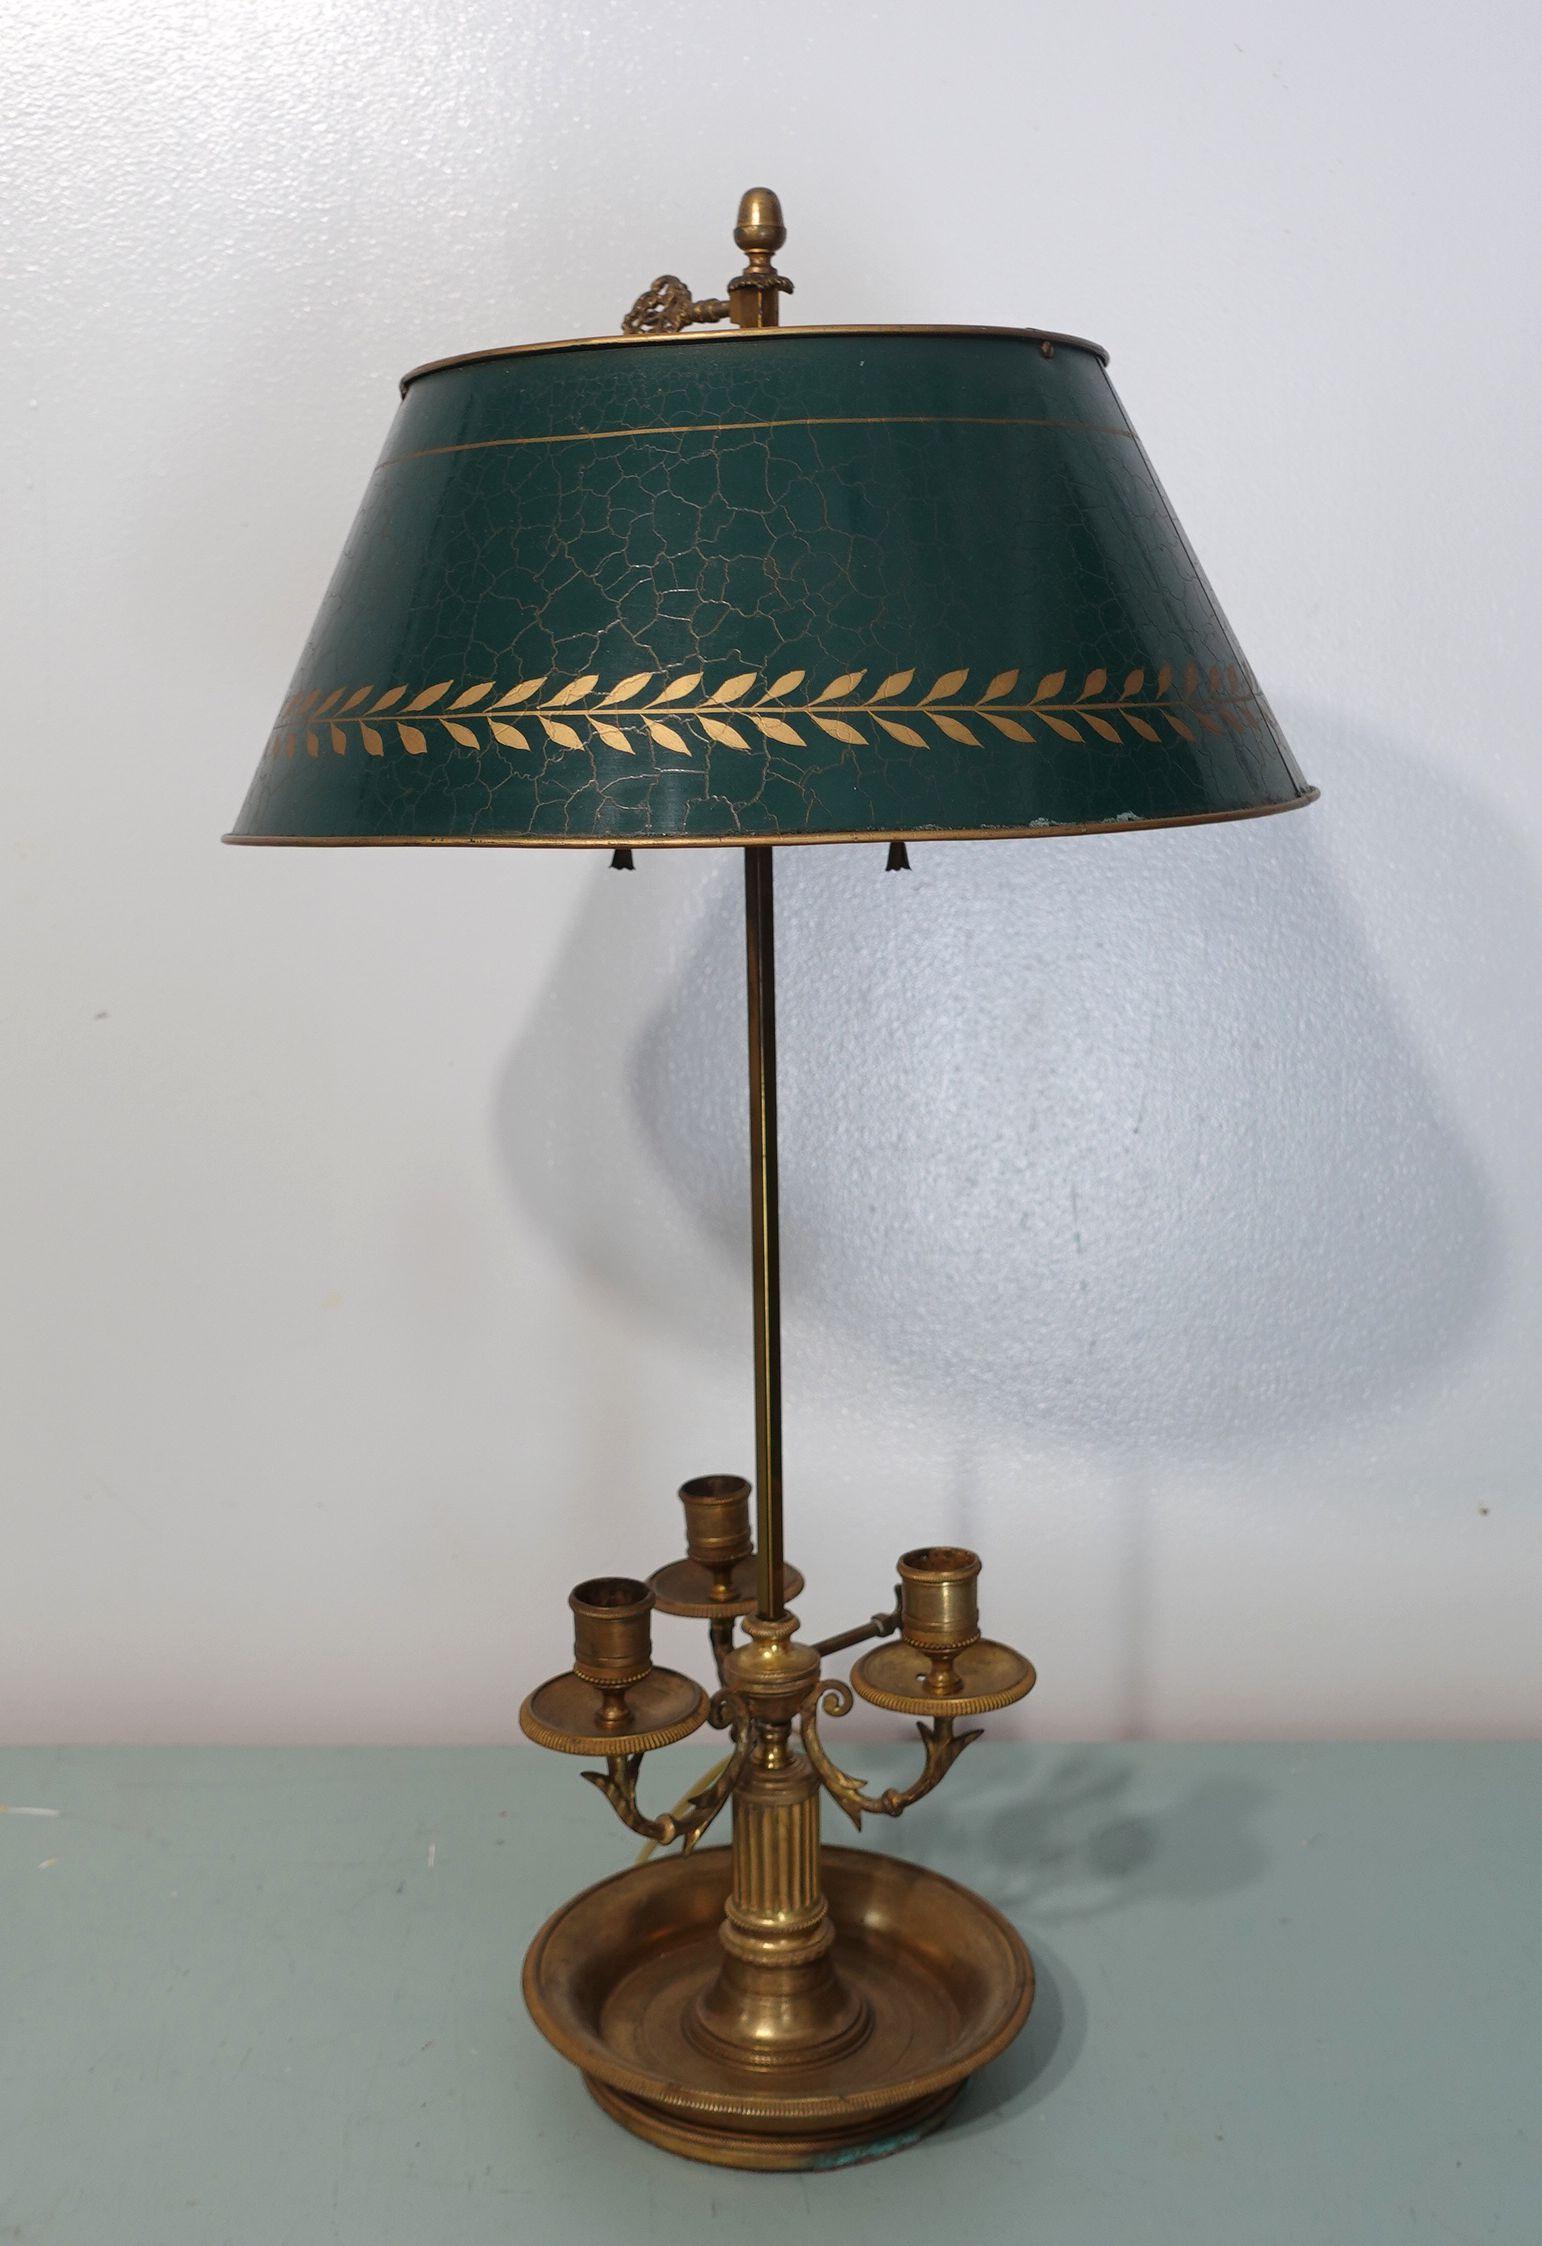 Lampe bouillotte du 19e siècle dans le goût Louis XVI, la tige en acier avec anneau de laurier en laiton et vis à tête de flèche, supportant un abat-jour en tole vert, le tout au-dessus d'une base de trois bras de bougie en laiton avec des supports